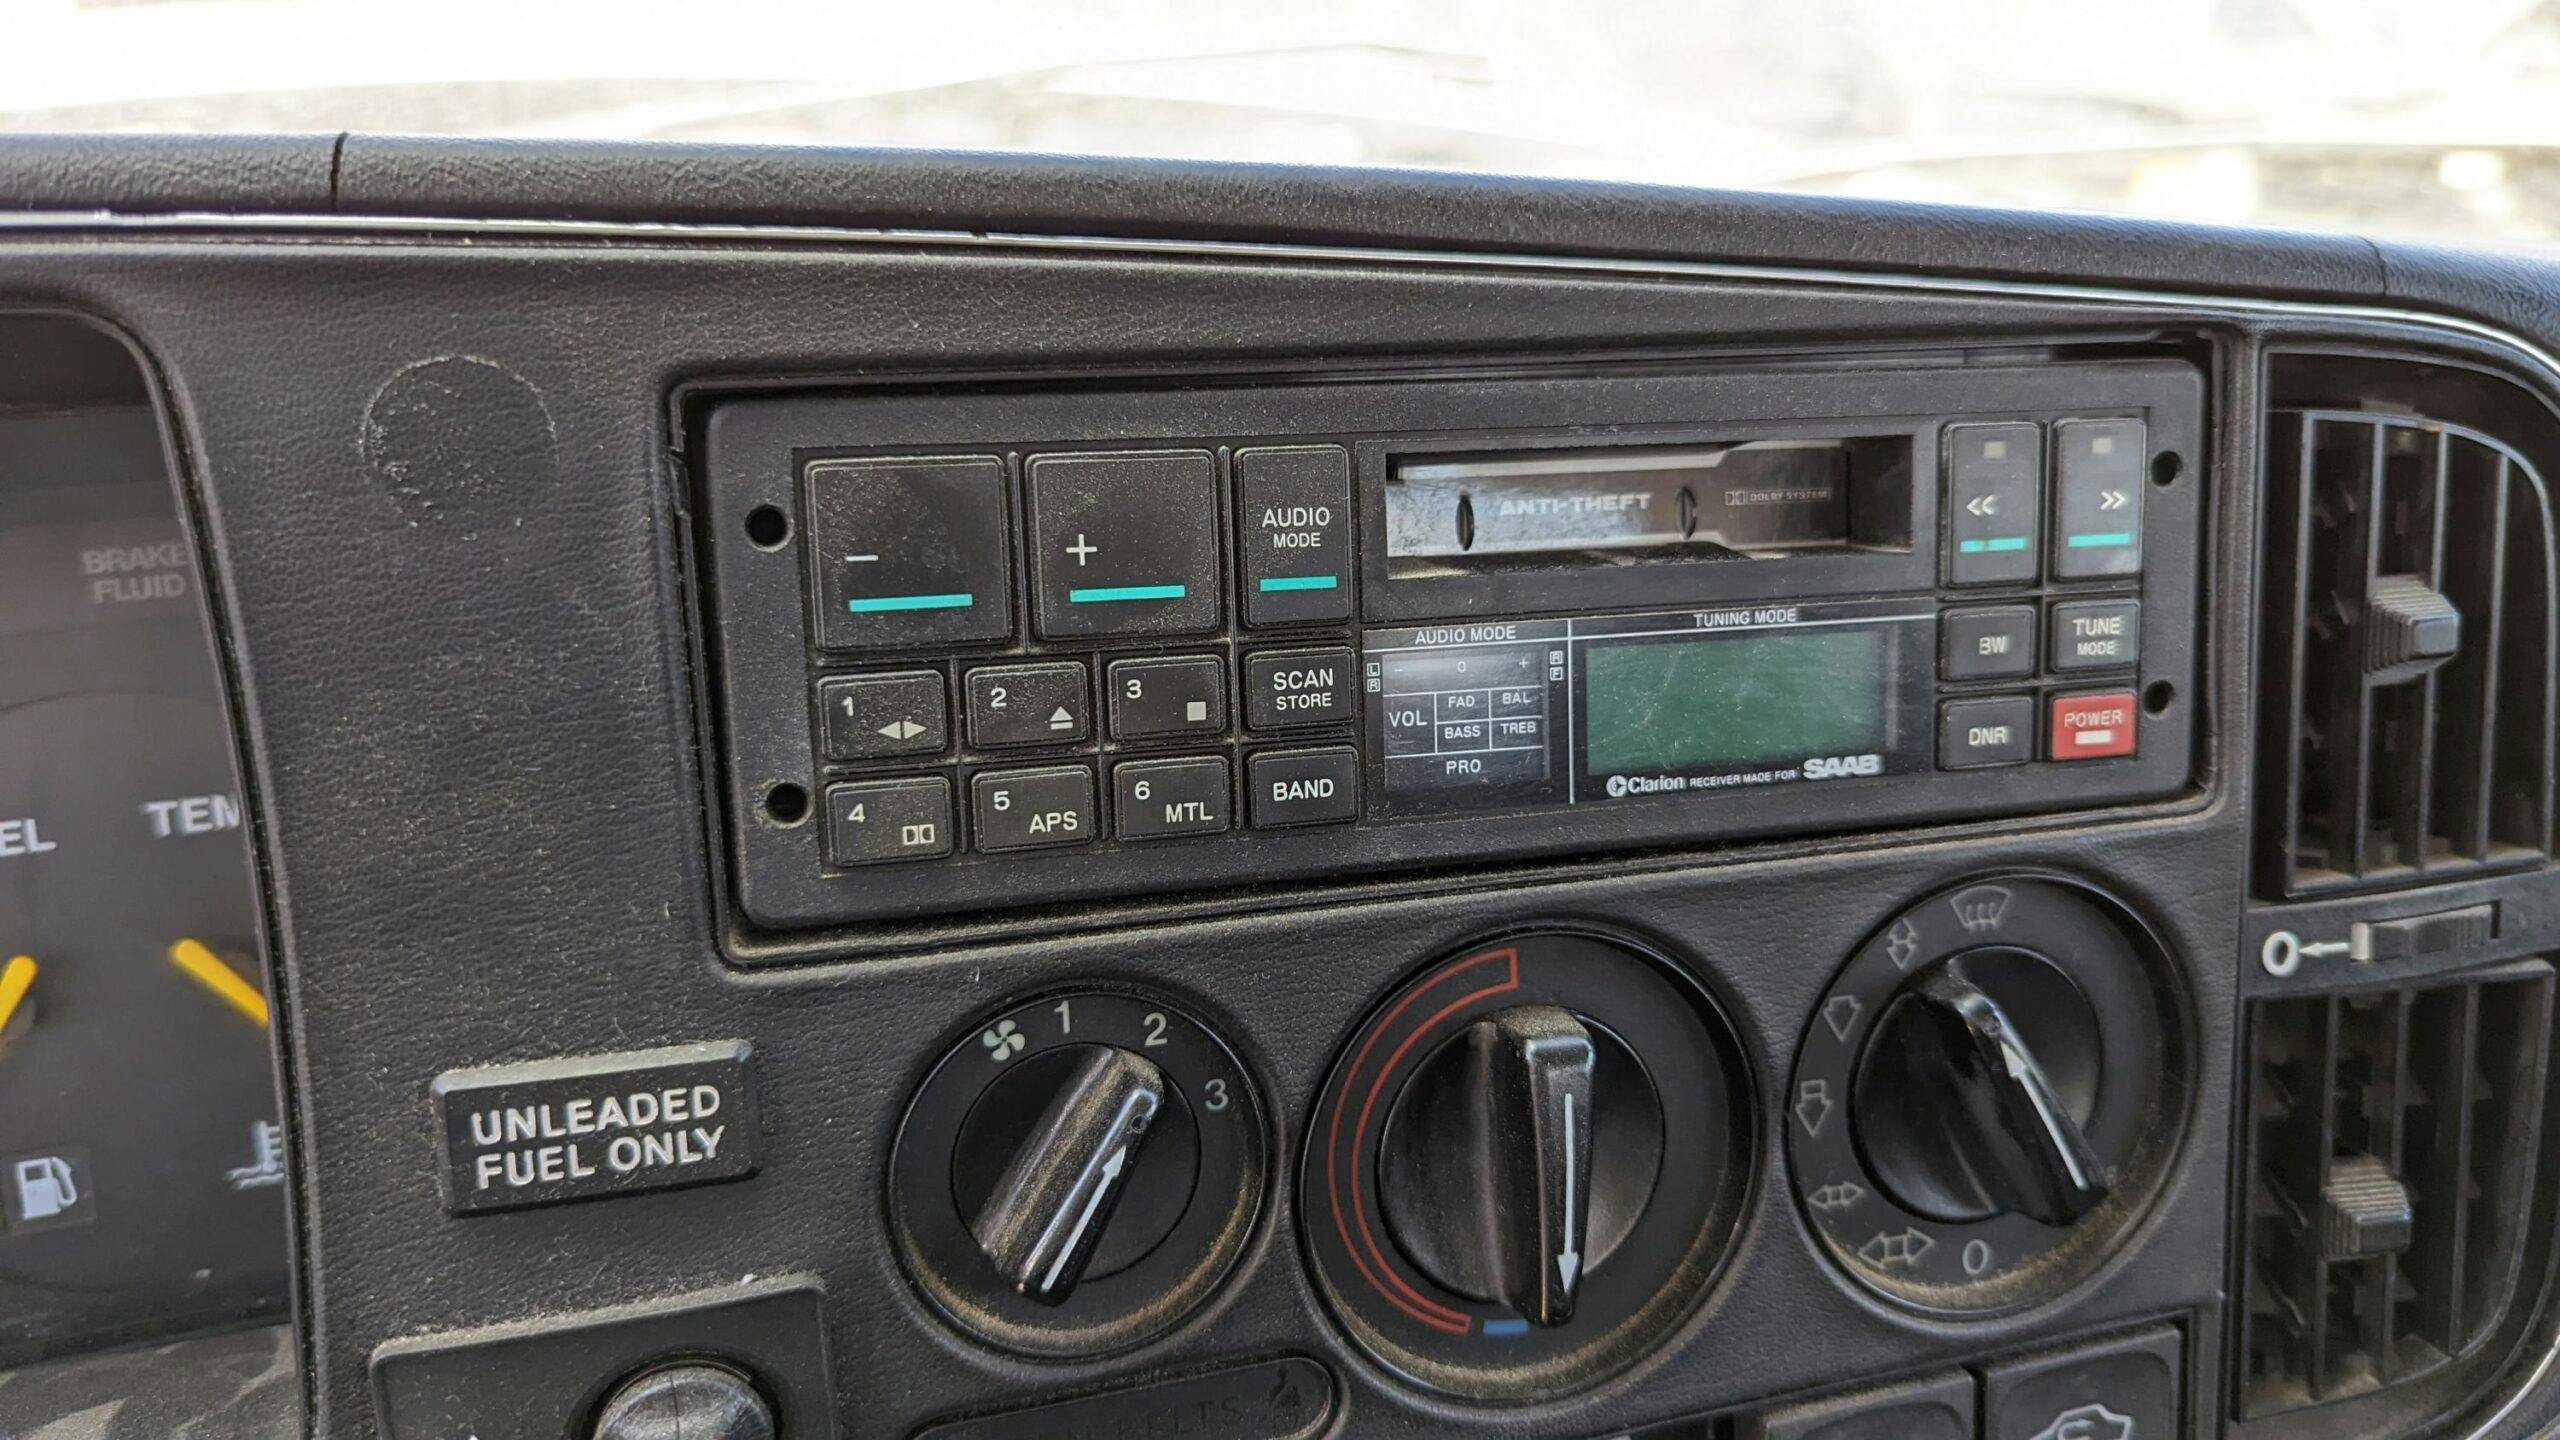 1986 Saab 900 S Sedan interior radio climate controls